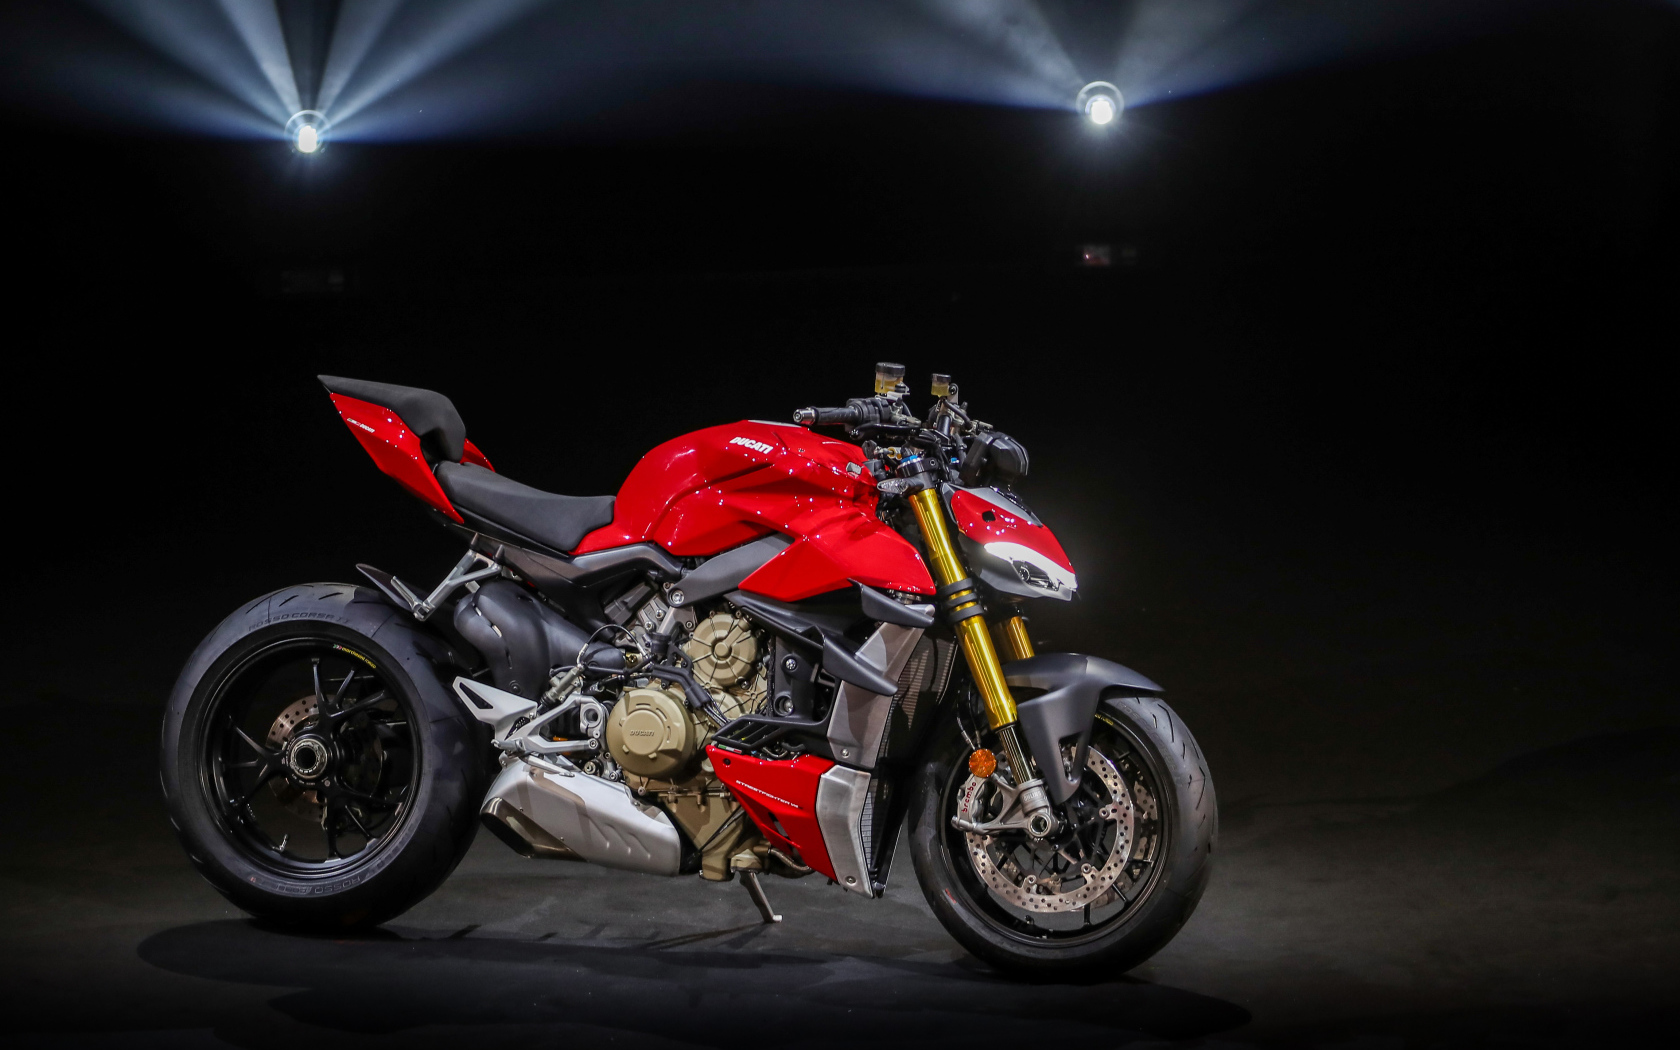 Stylish red bike Ducati V4 Streetfighter, 2020 in the spotlight